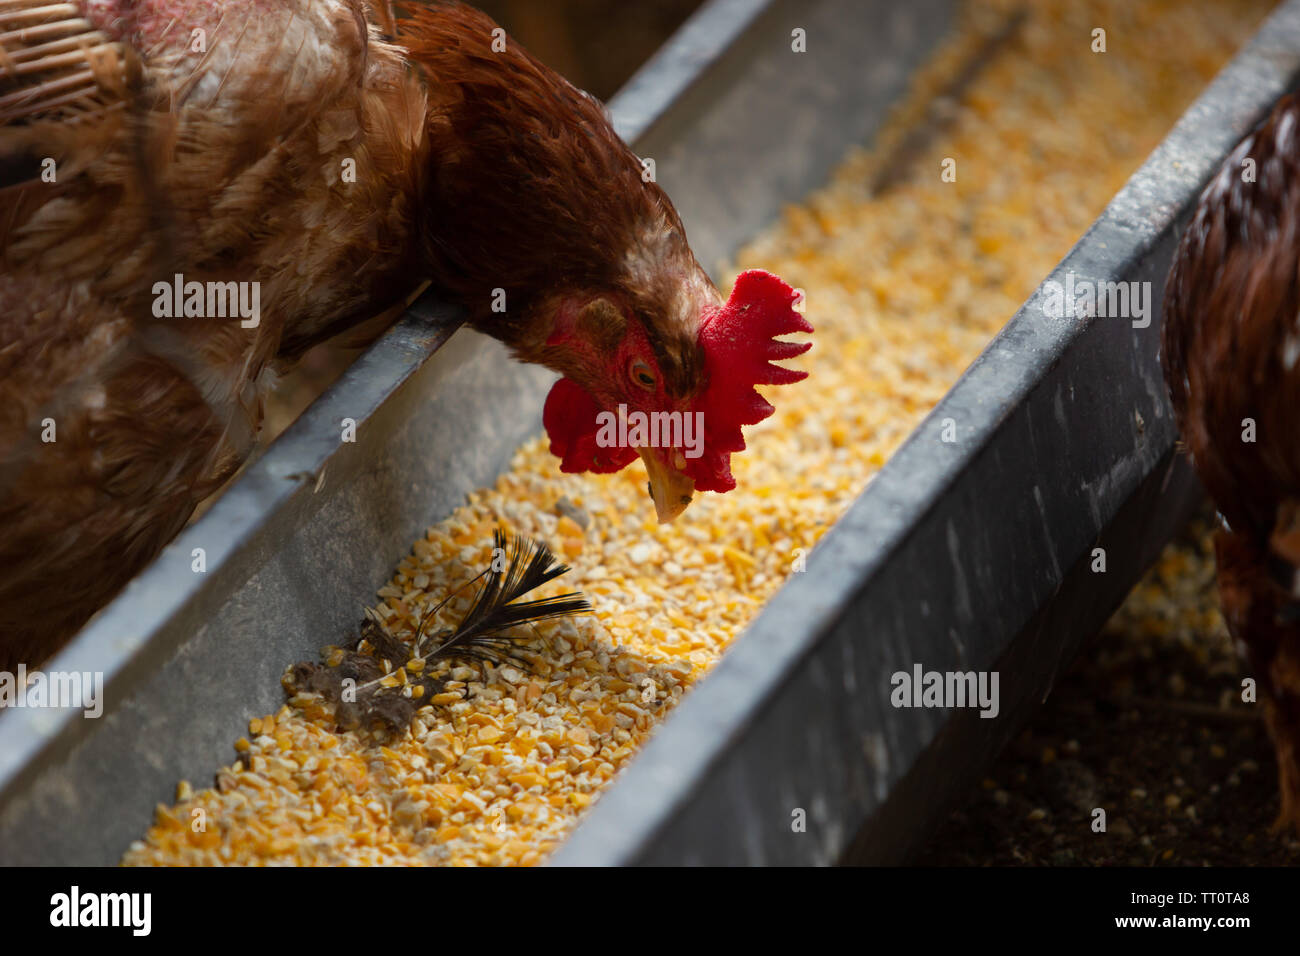 Una gallina con aislado rojo alimentación de aves de corral con granos de maíz Foto de stock